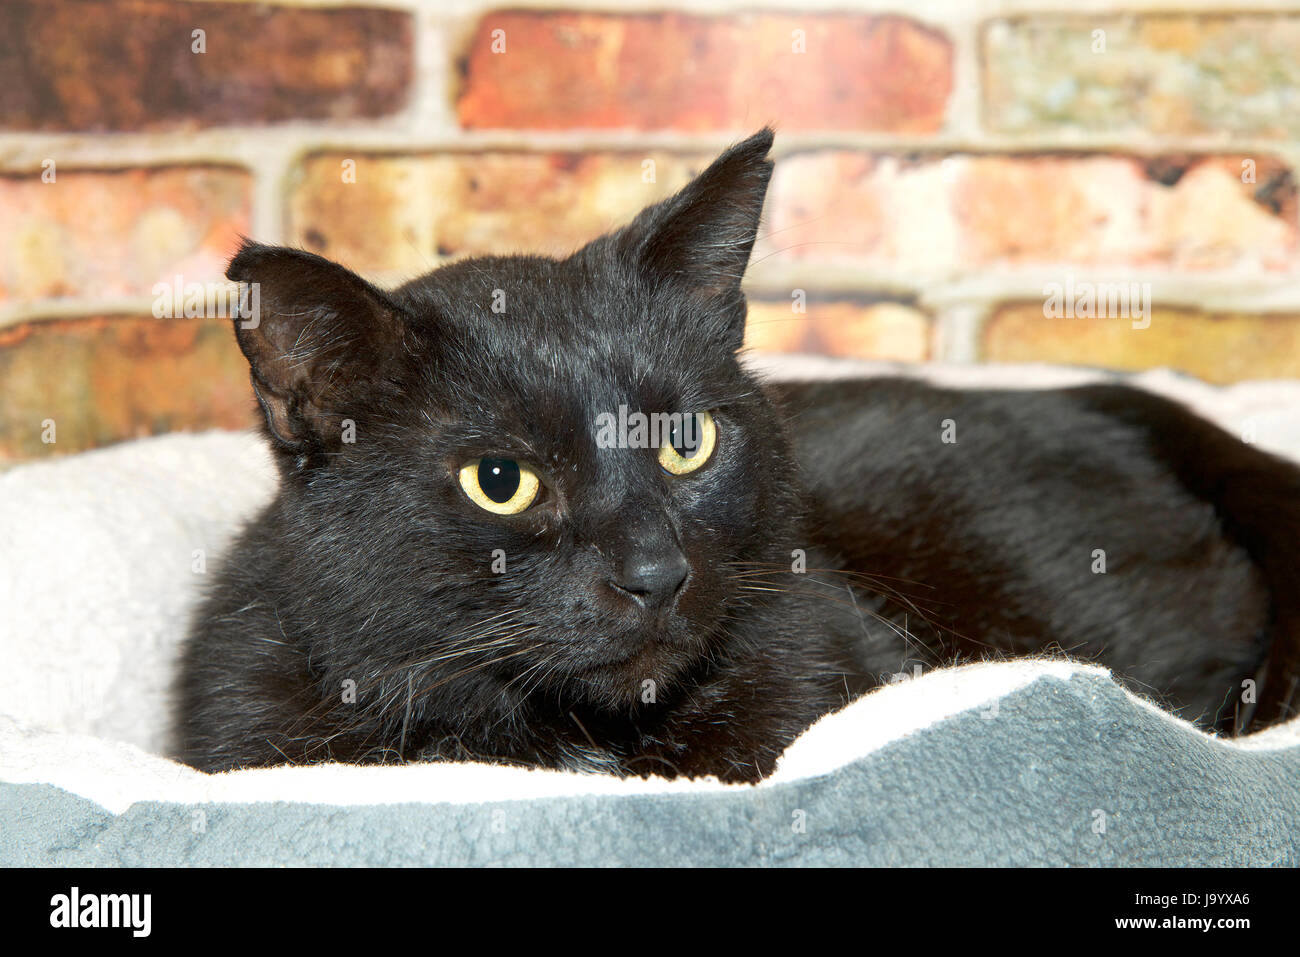 Ritratto di un nero tabby gatto con gli occhi gialli che stabilisce nel lettino pet guardando ai telespettatori di destra. Rosso ruggine muro di mattoni in background. Foto Stock